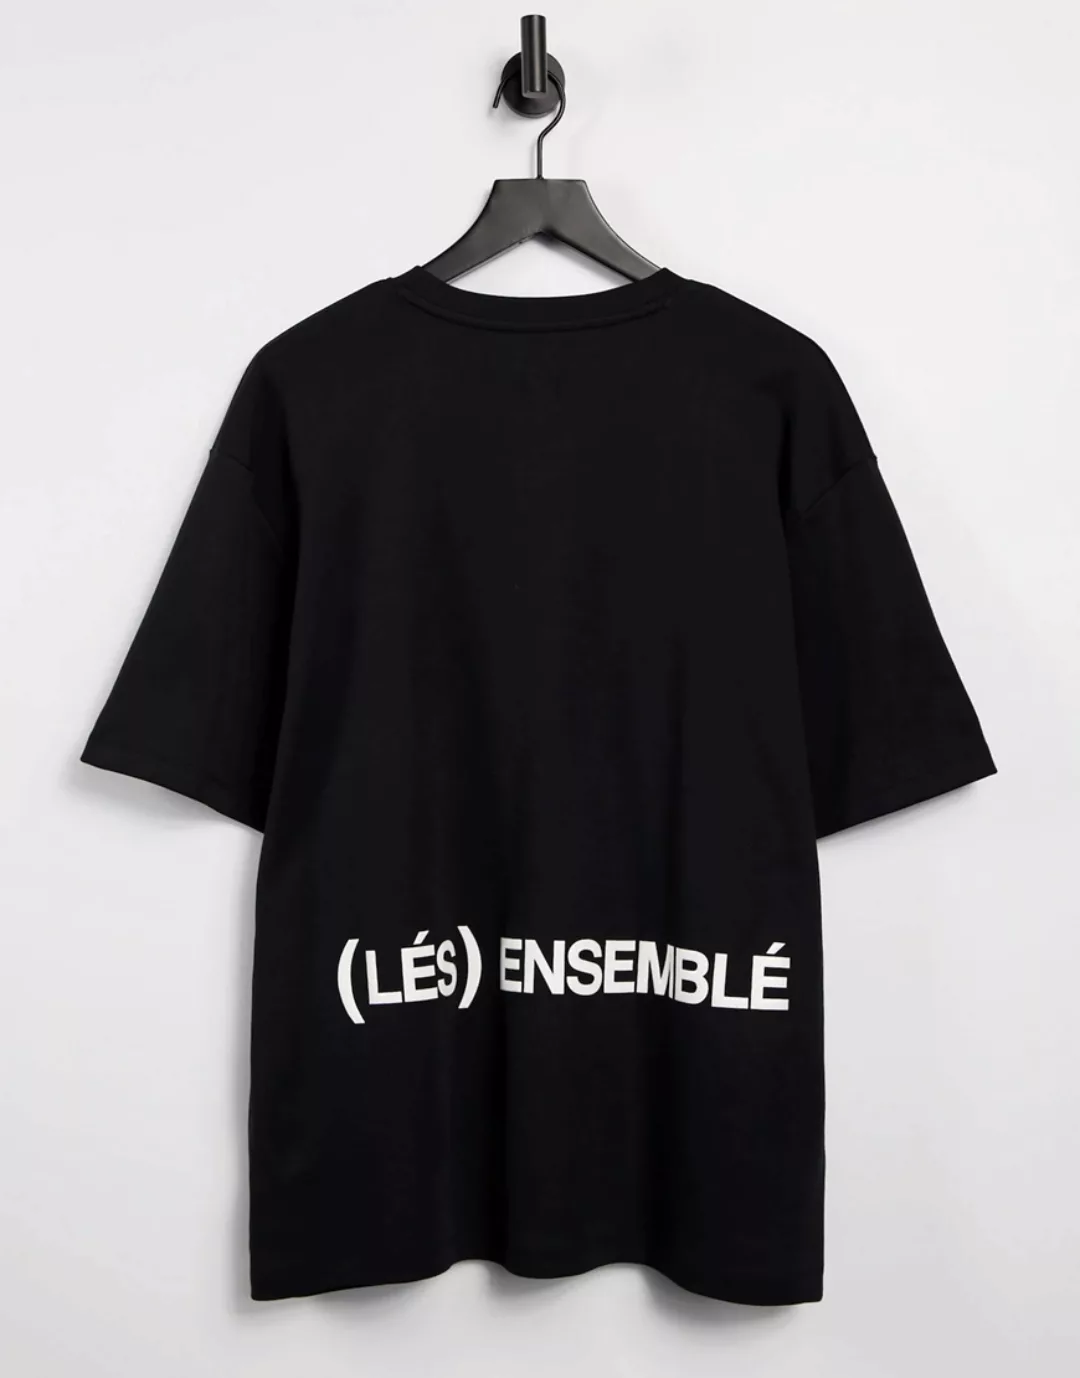 River Island – Les Ensembles – T-Shirt in Schwarz günstig online kaufen